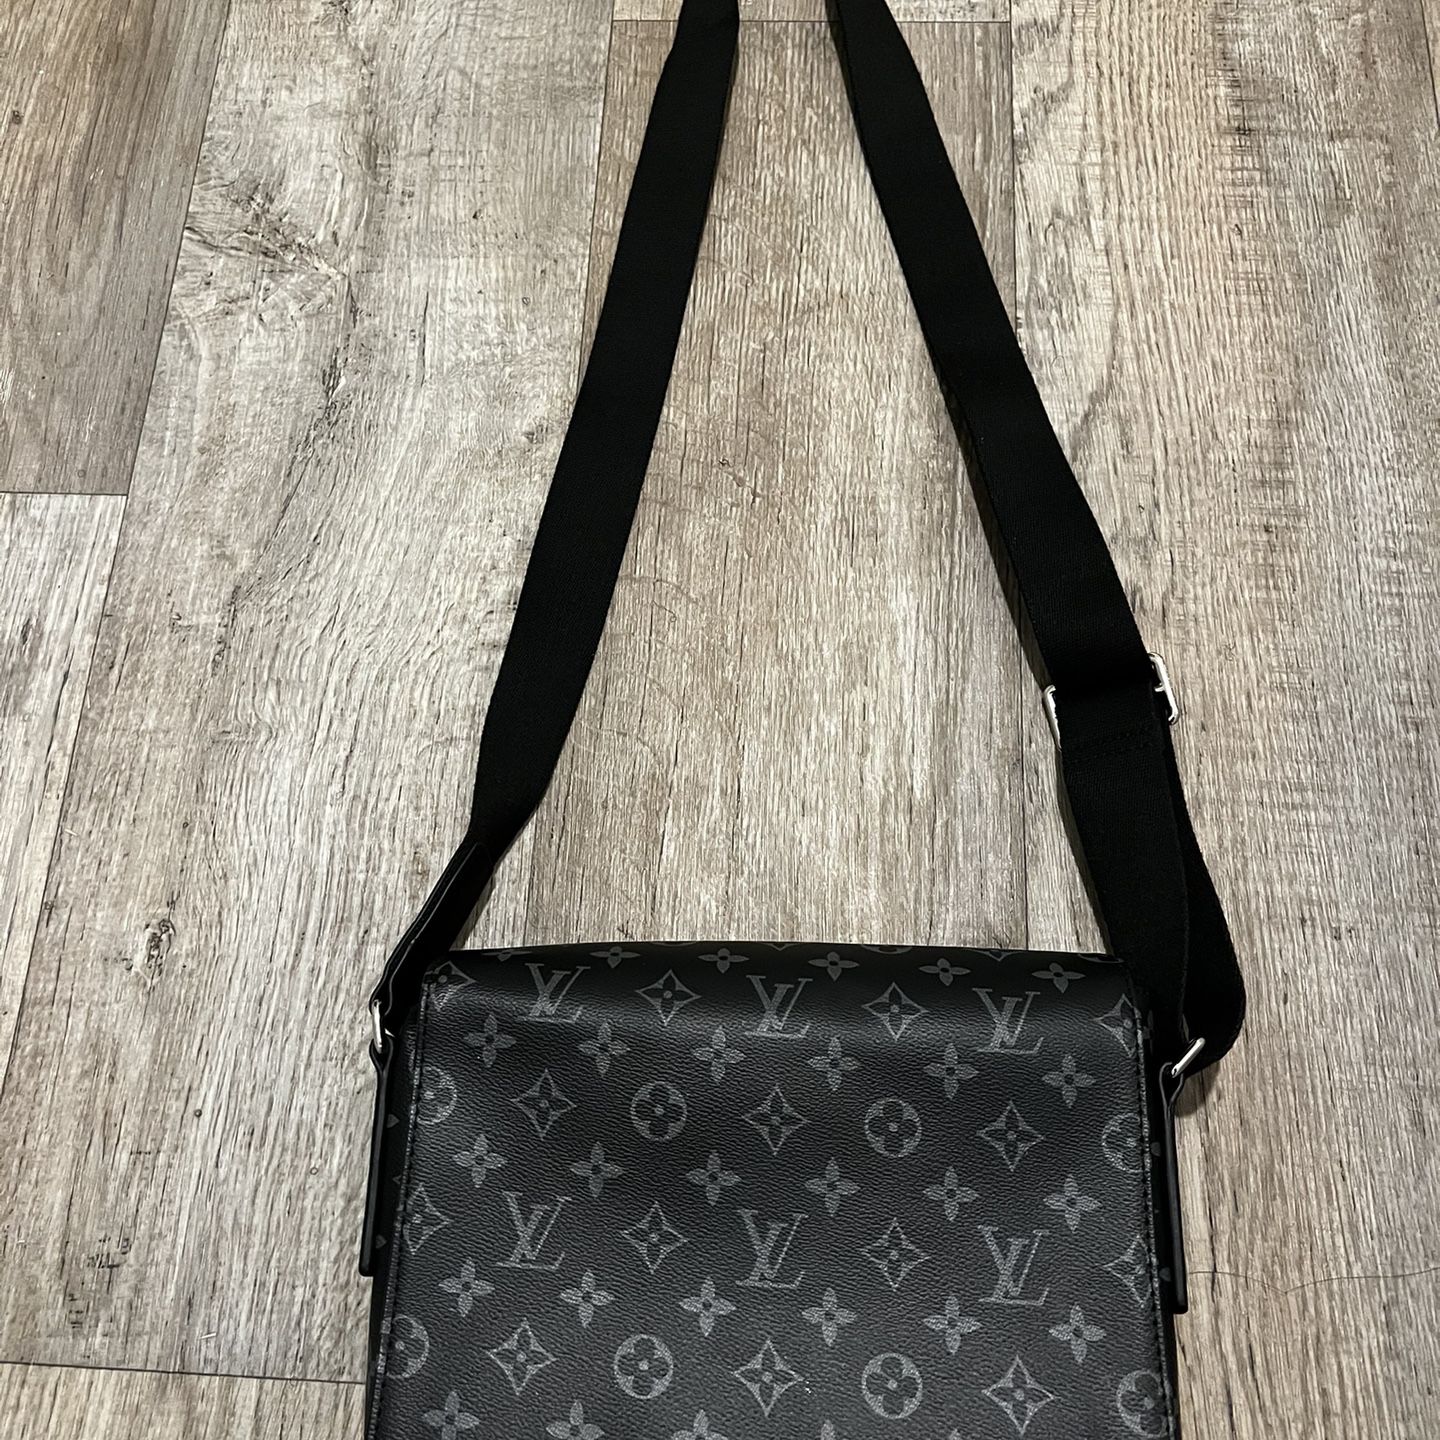 Louis Vuitton Messenger Bag - District PM Damier Graphite (Men’s/Unisex)  for Sale in Houston, TX - OfferUp